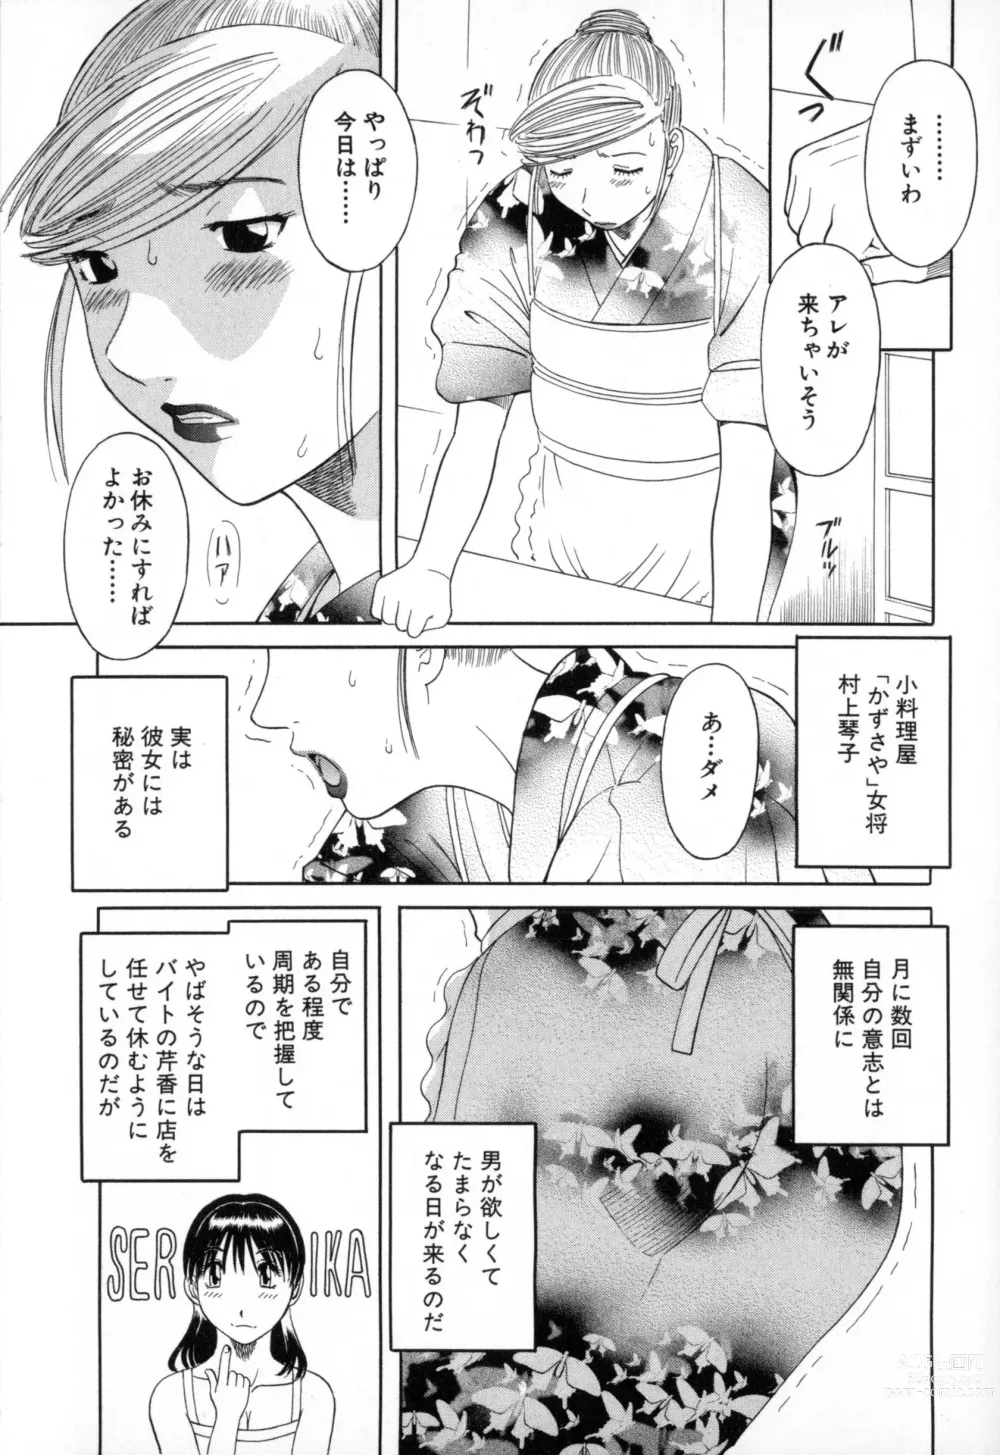 Page 9 of manga Gokuraku Ladies - Paradise Ladies Enjuku Hen